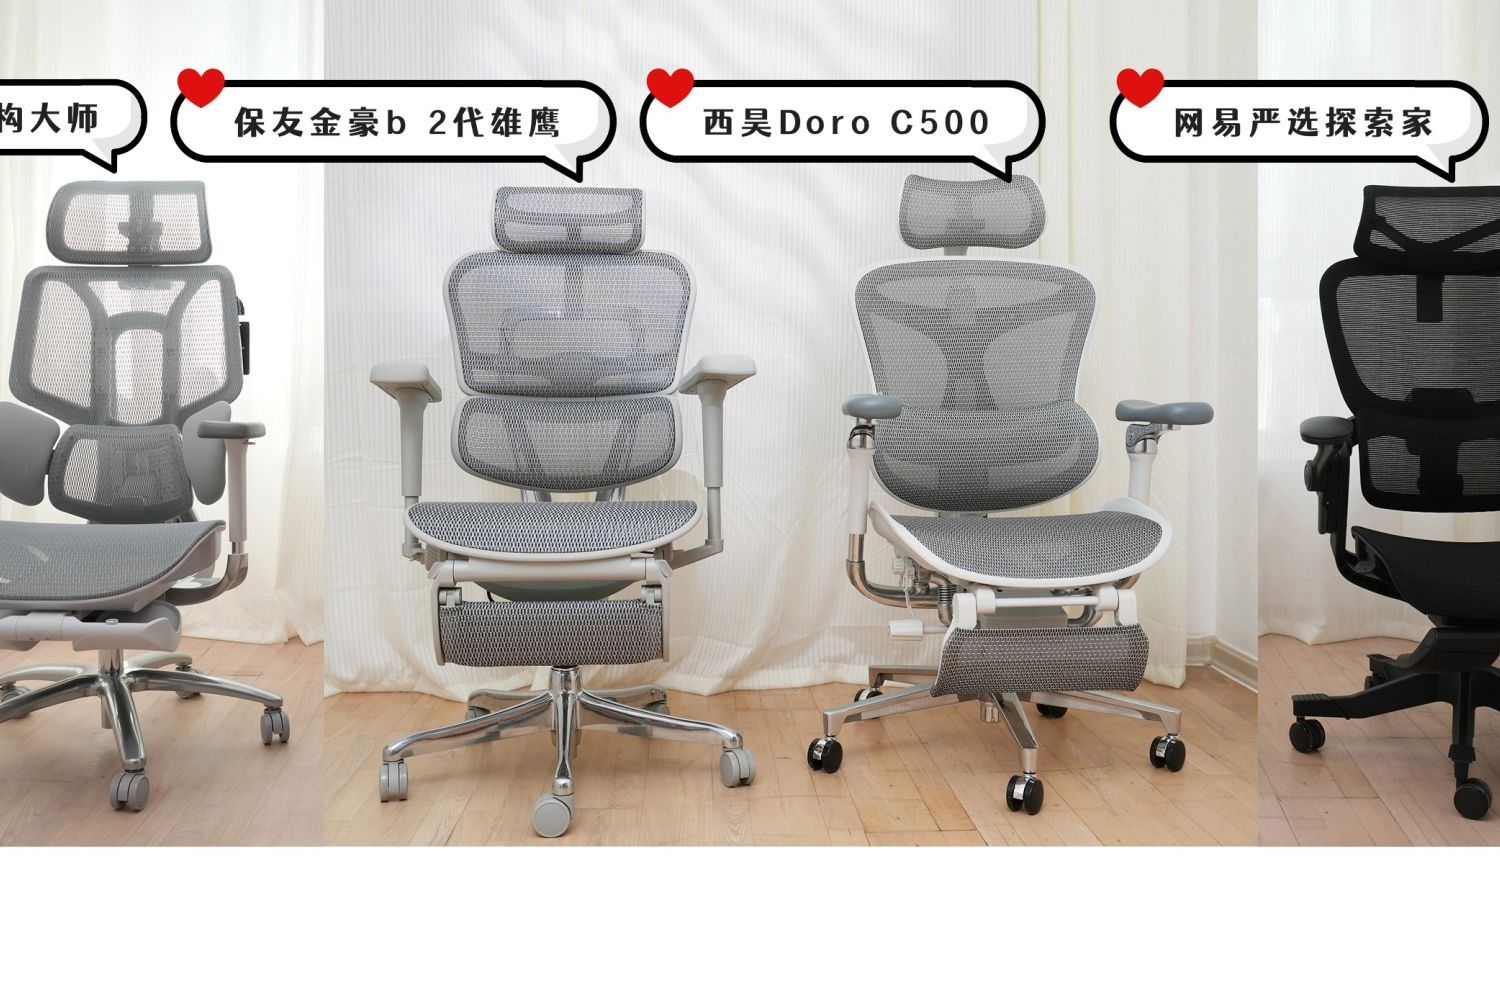 人体工学椅对比保友金豪b 2代、C500、探索家